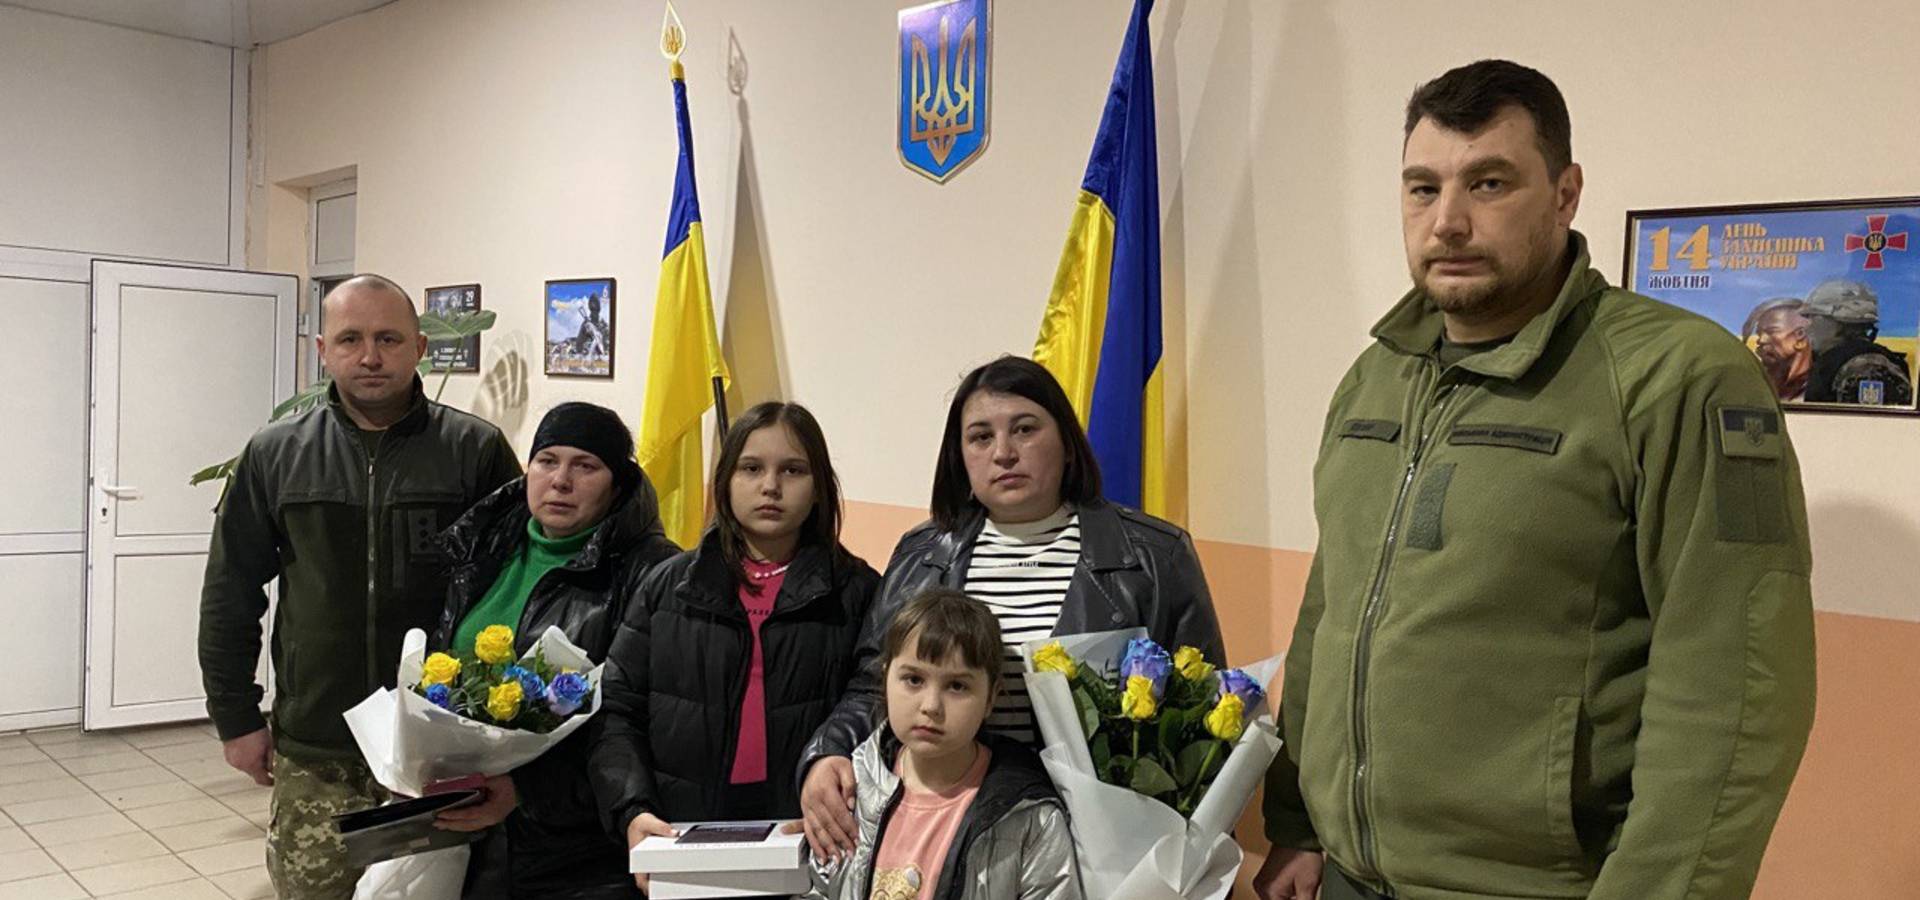 Двох захисників з Хмільниччини Президент України нагородив орденами "За мужність" ІІІ ступеня (посмертно)